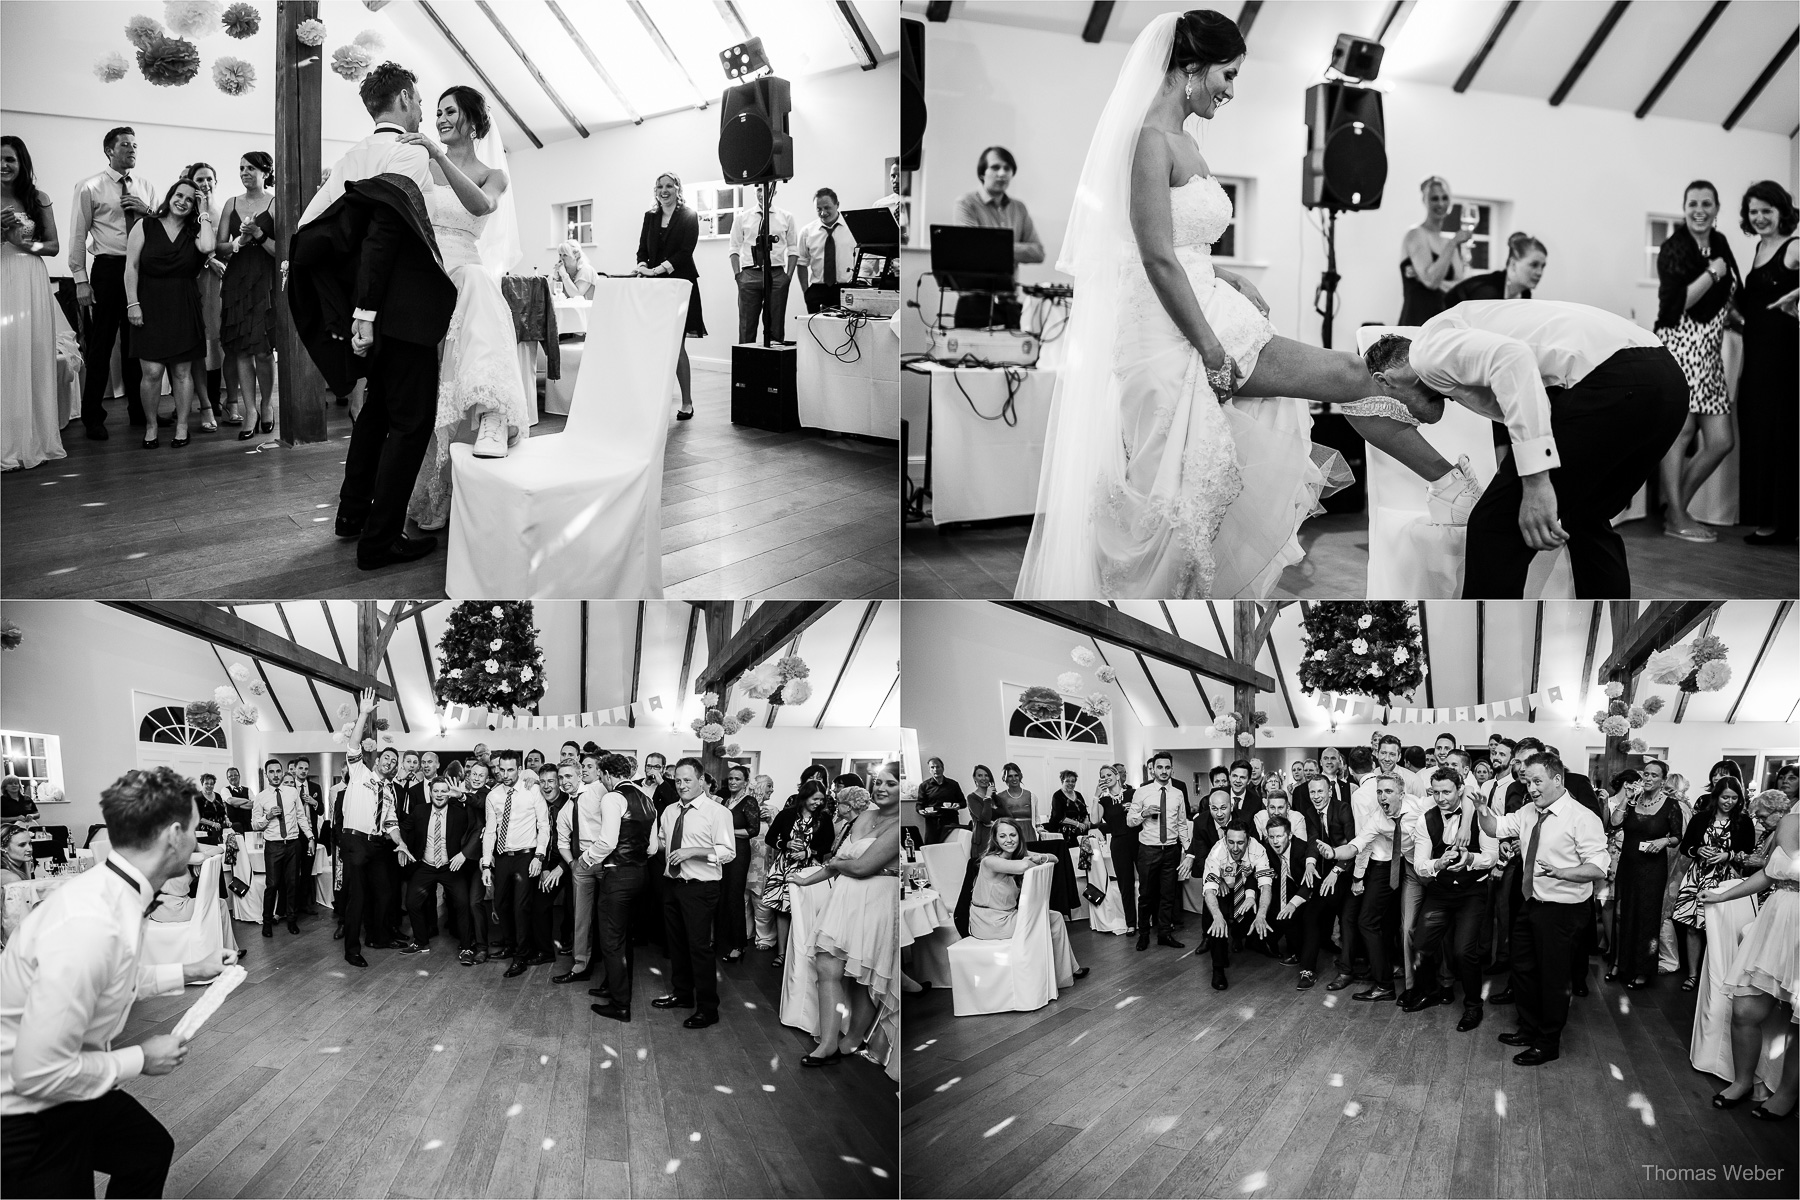 Hochzeit auf dem Gut Sandheide und Hochzeitsfeier in der Eventscheune St. Georg in Rastede, Hochzeitsfotograf Thomas Weber aus Oldenburg